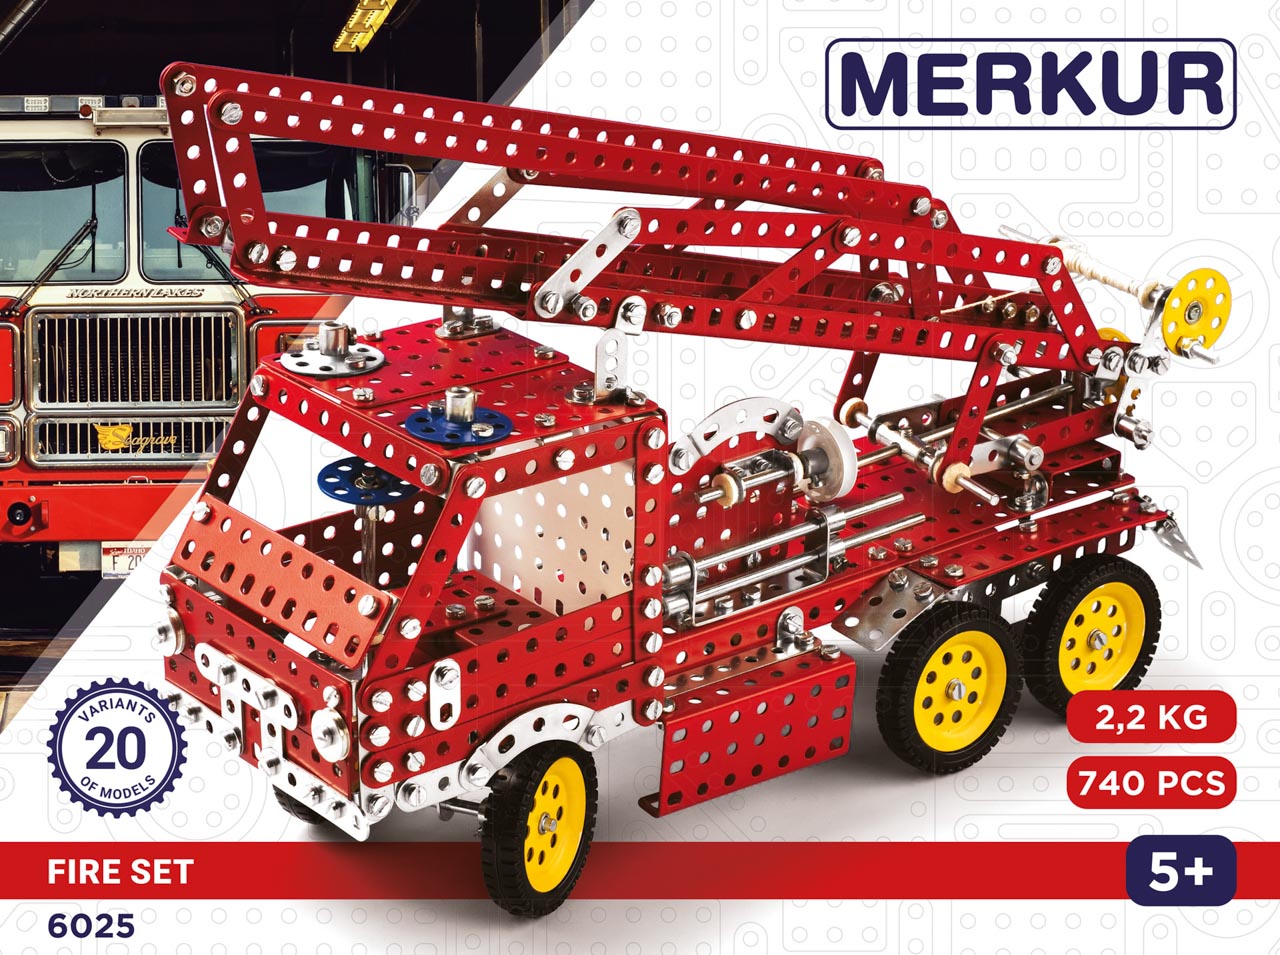 MERKUR - Stavebnice Merkur Fire Set, 740 dílů